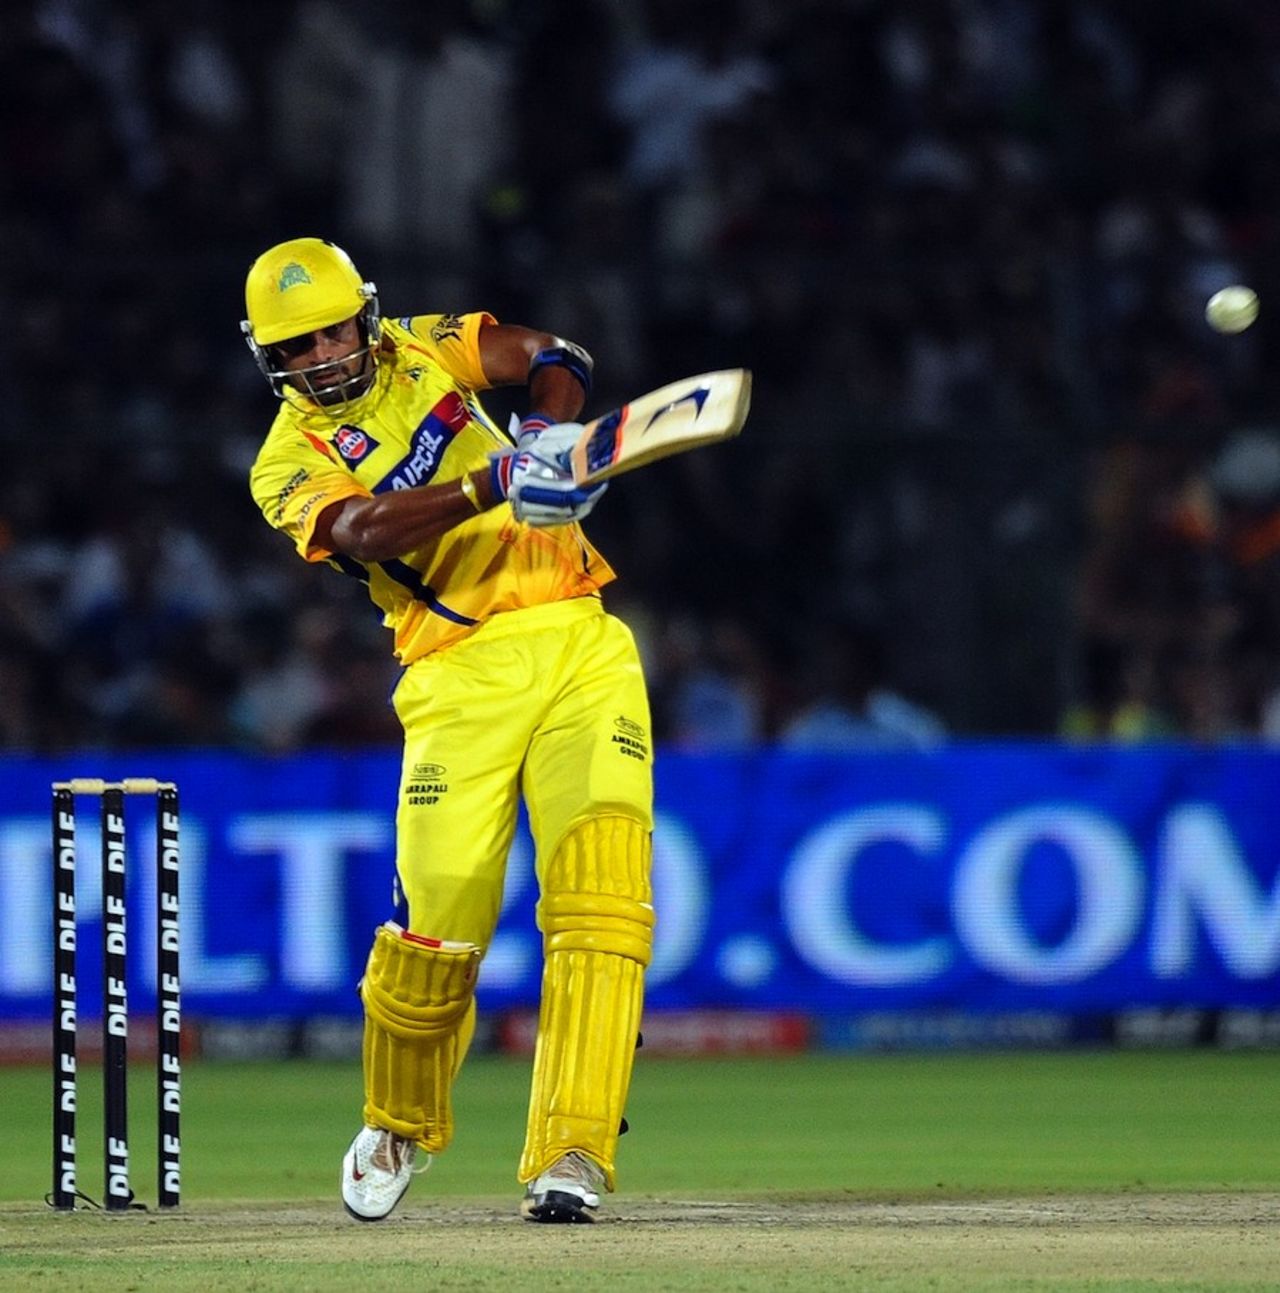 M Vijay scored 53 off 40 balls, Rajasthan v Chennai, IPL 2011, Jaipur, May 9, 2011